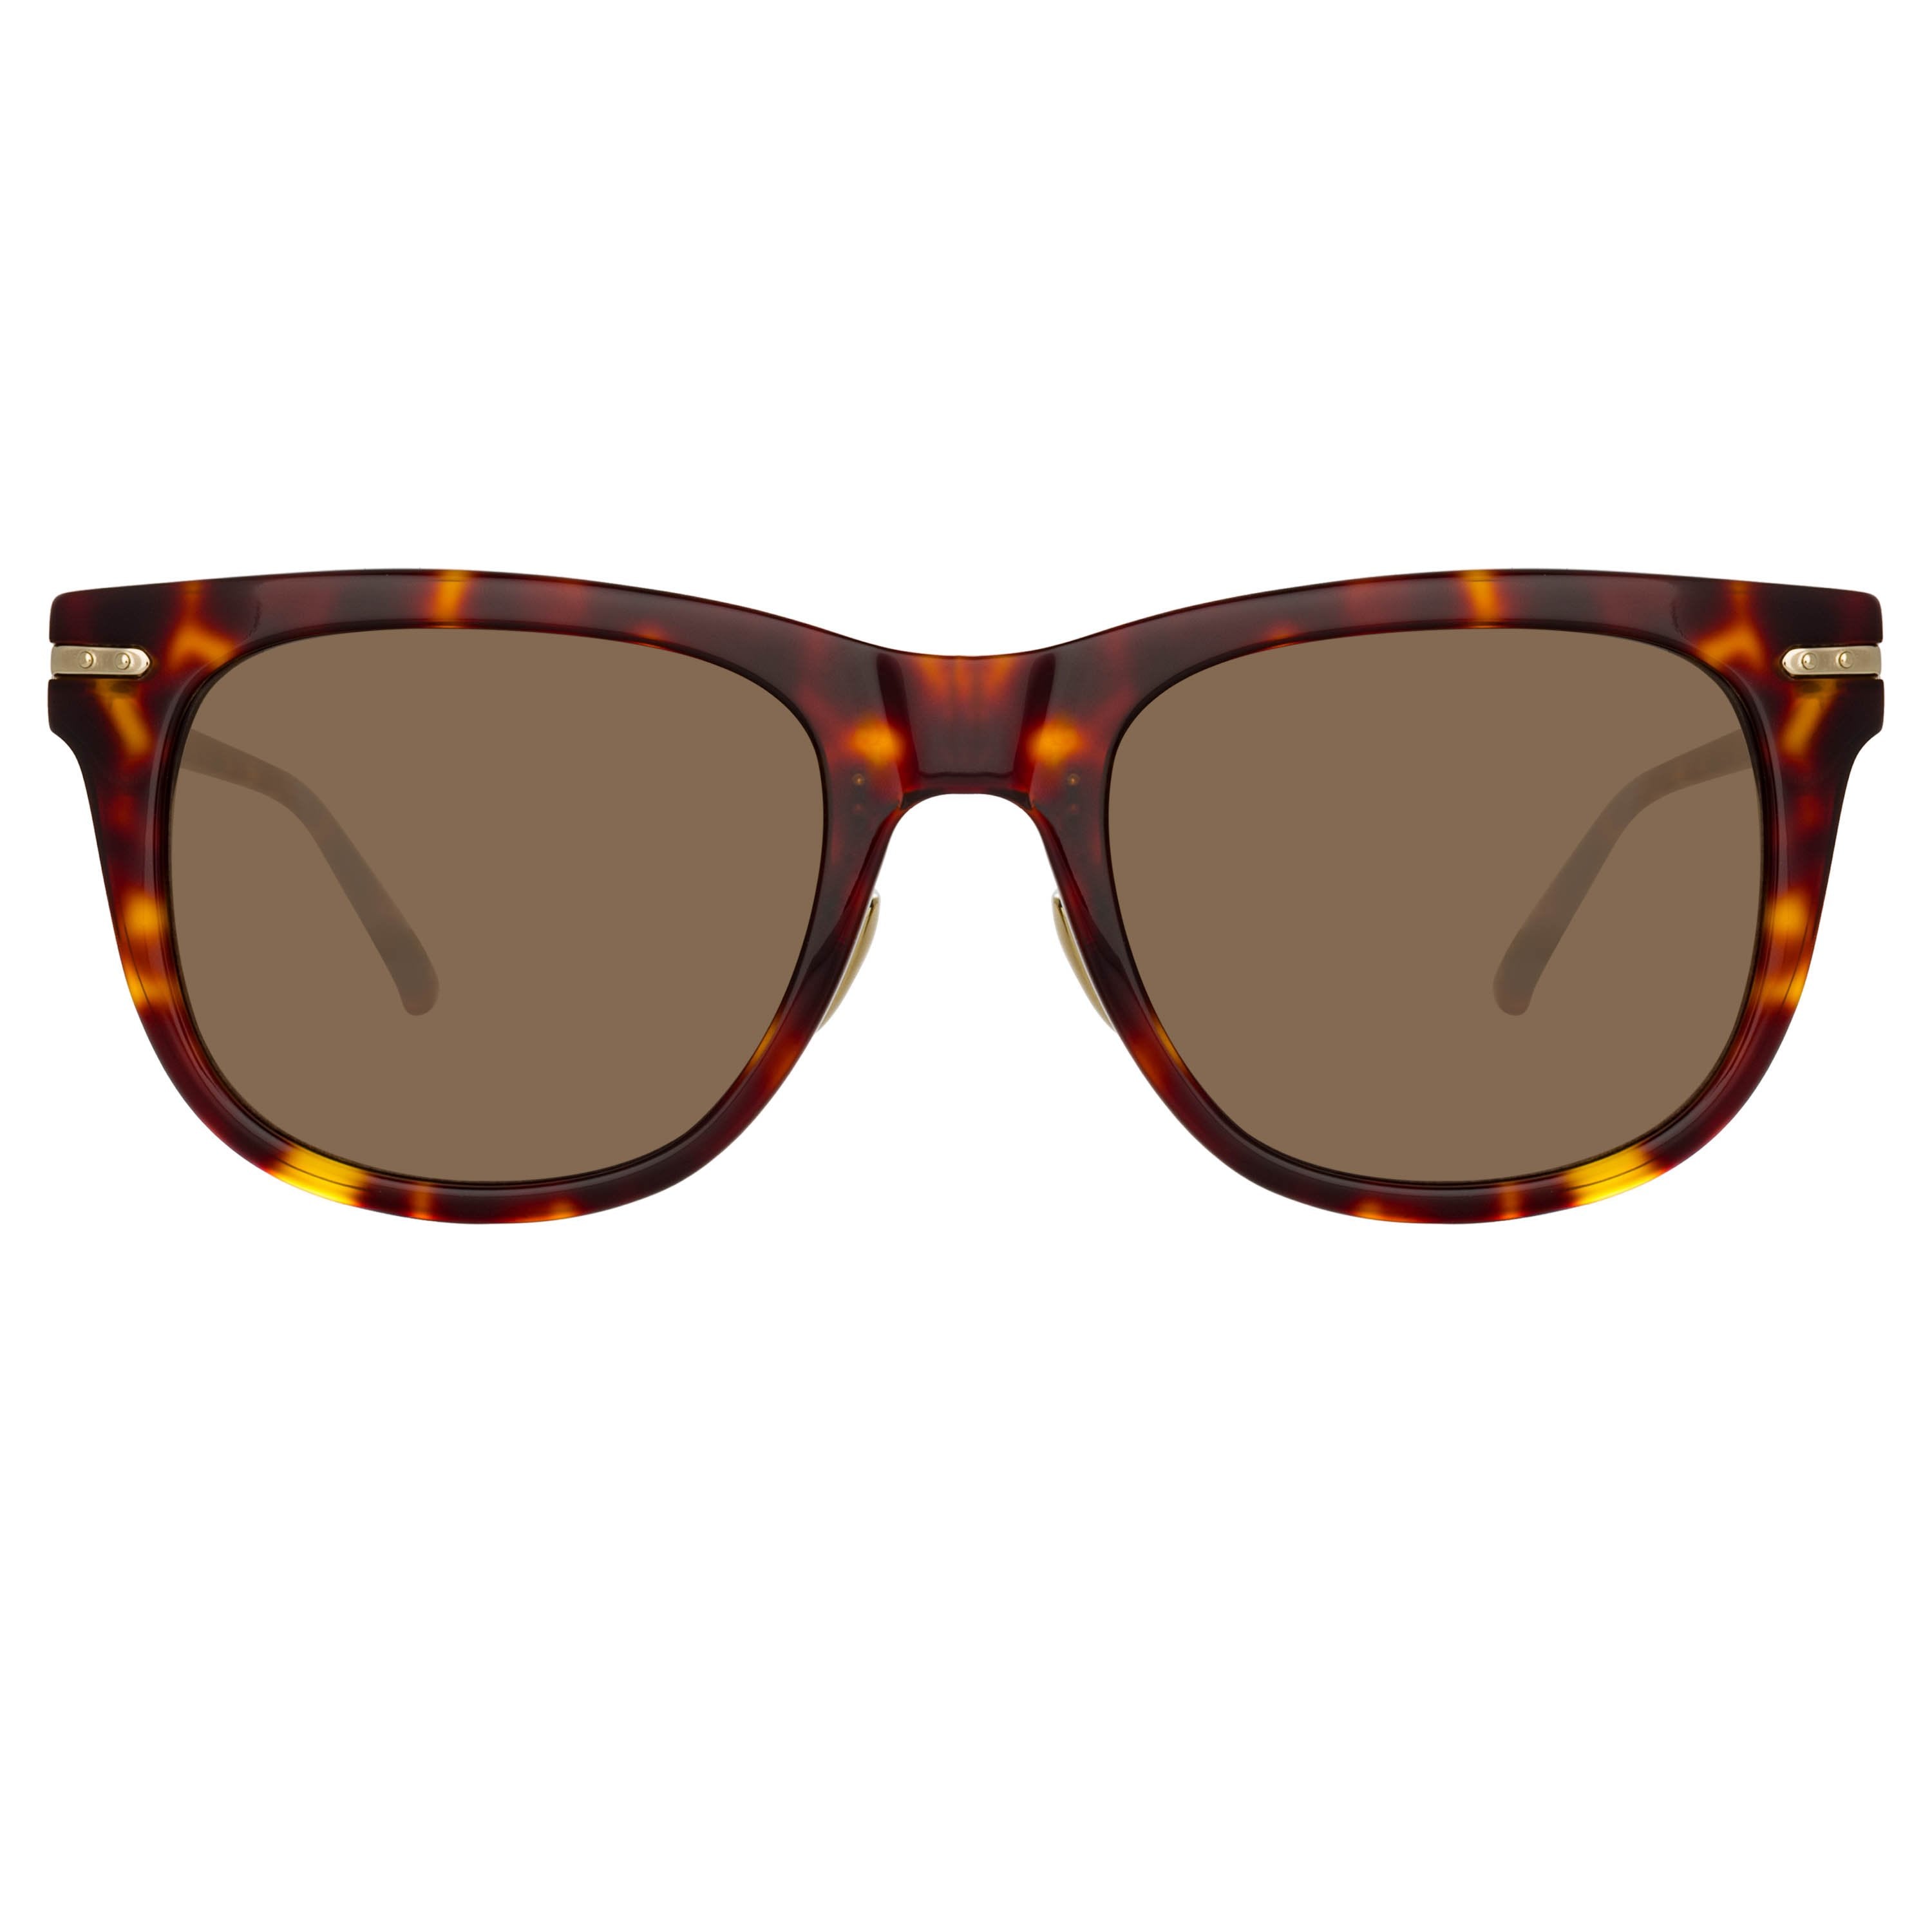 Color_LF43C5SUN - Chrysler D-Frame Sunglasses in Tortoiseshell